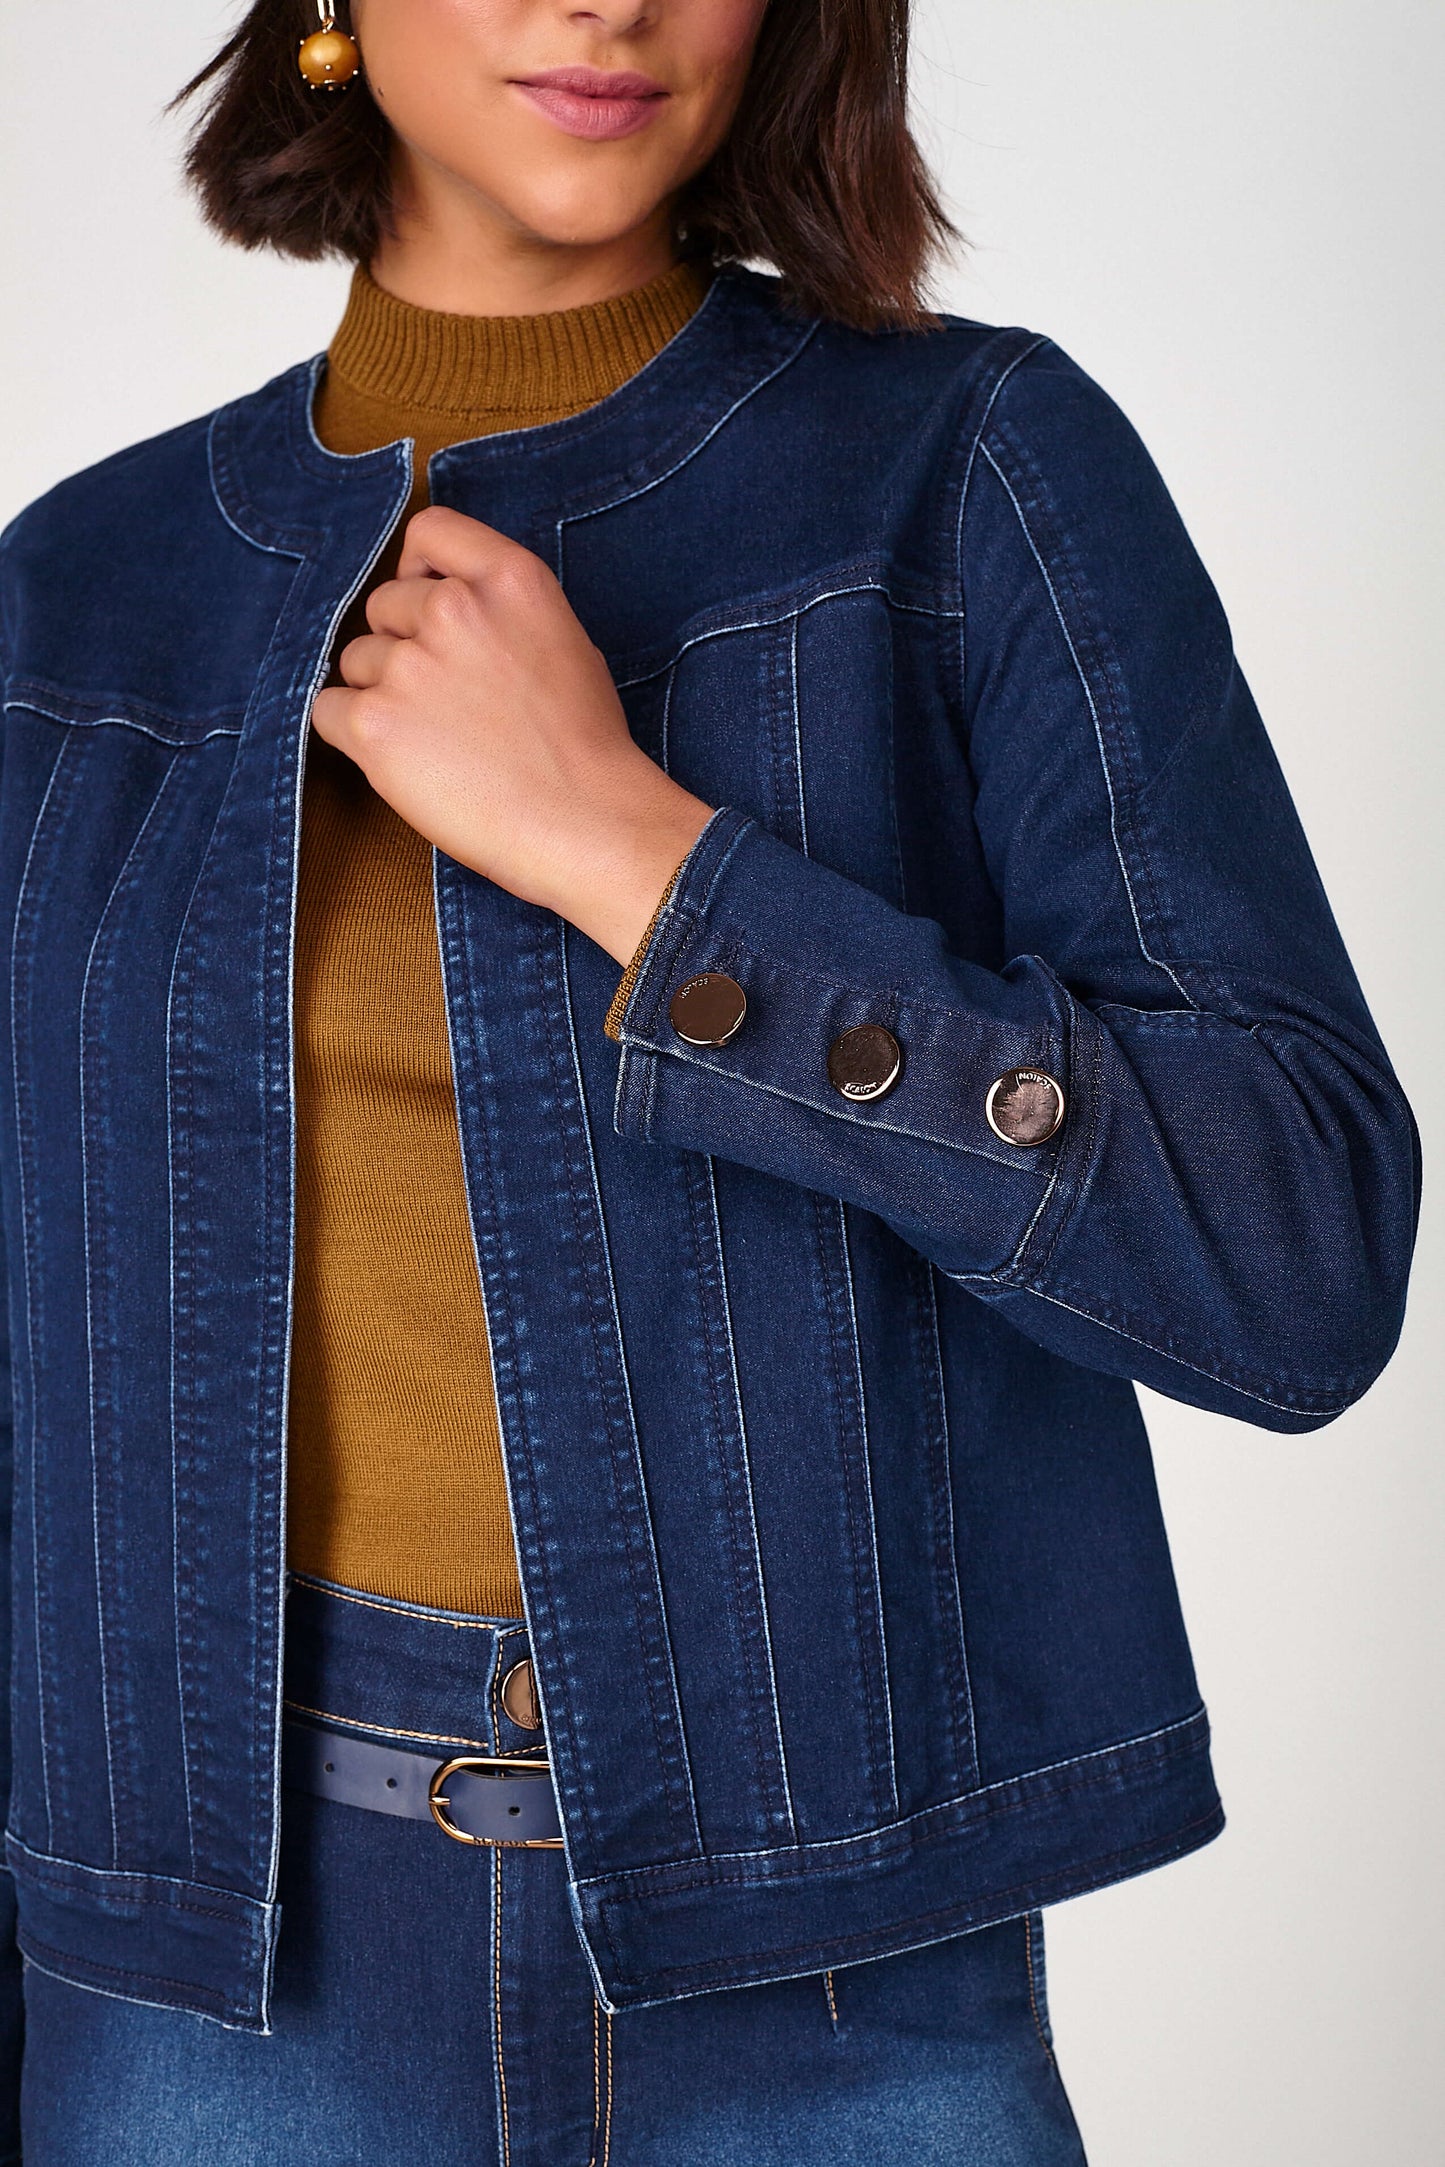 casaco jeans manga longa com detalhe no punho